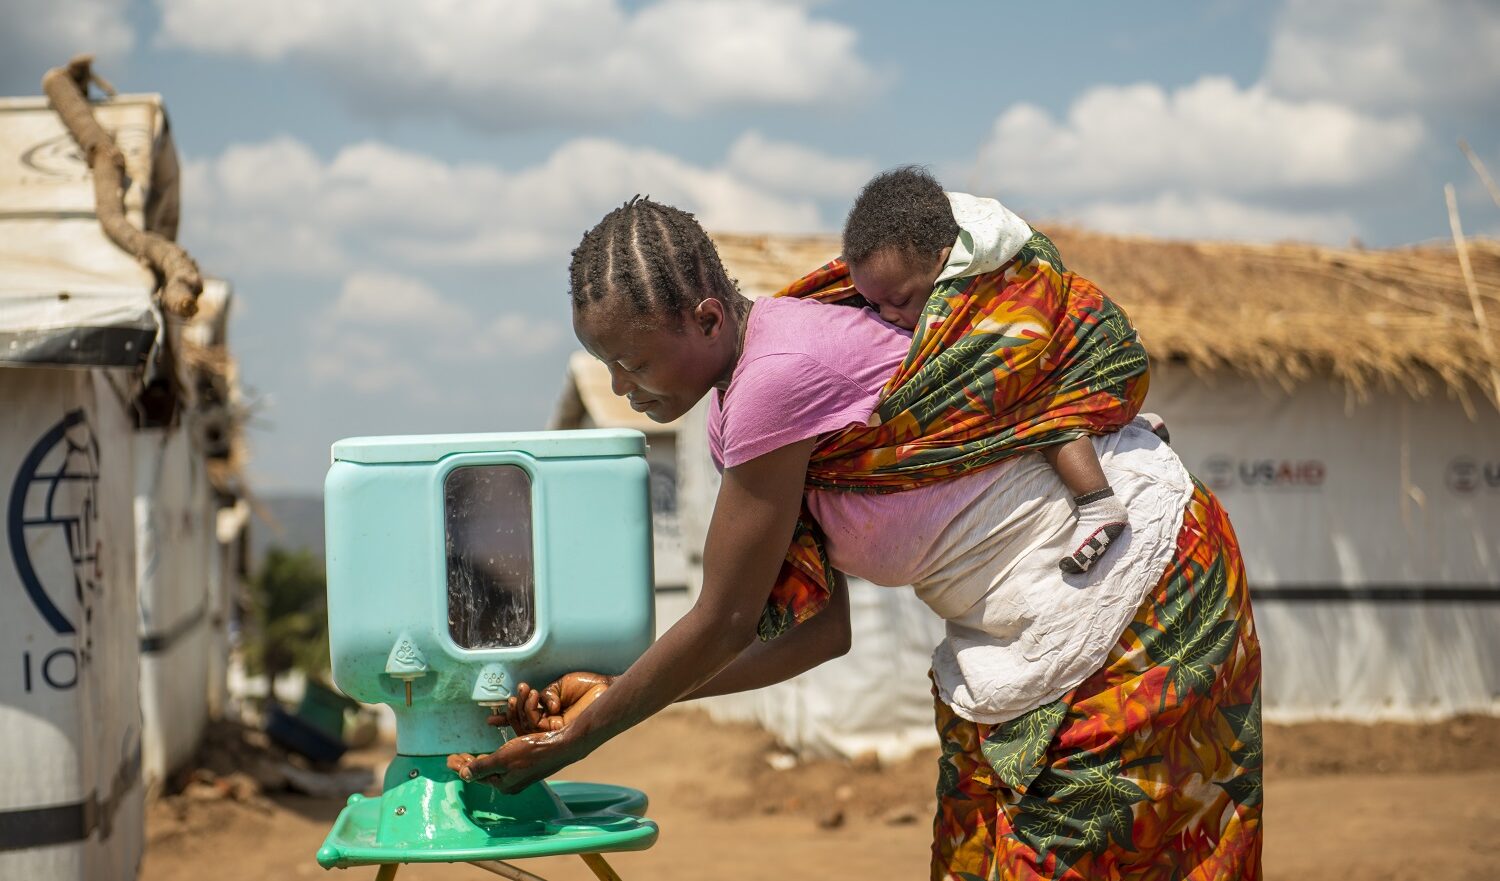 L'Onu lancia l'allarme: "Entro il 2030, la domanda di acqua salirà del 40%"